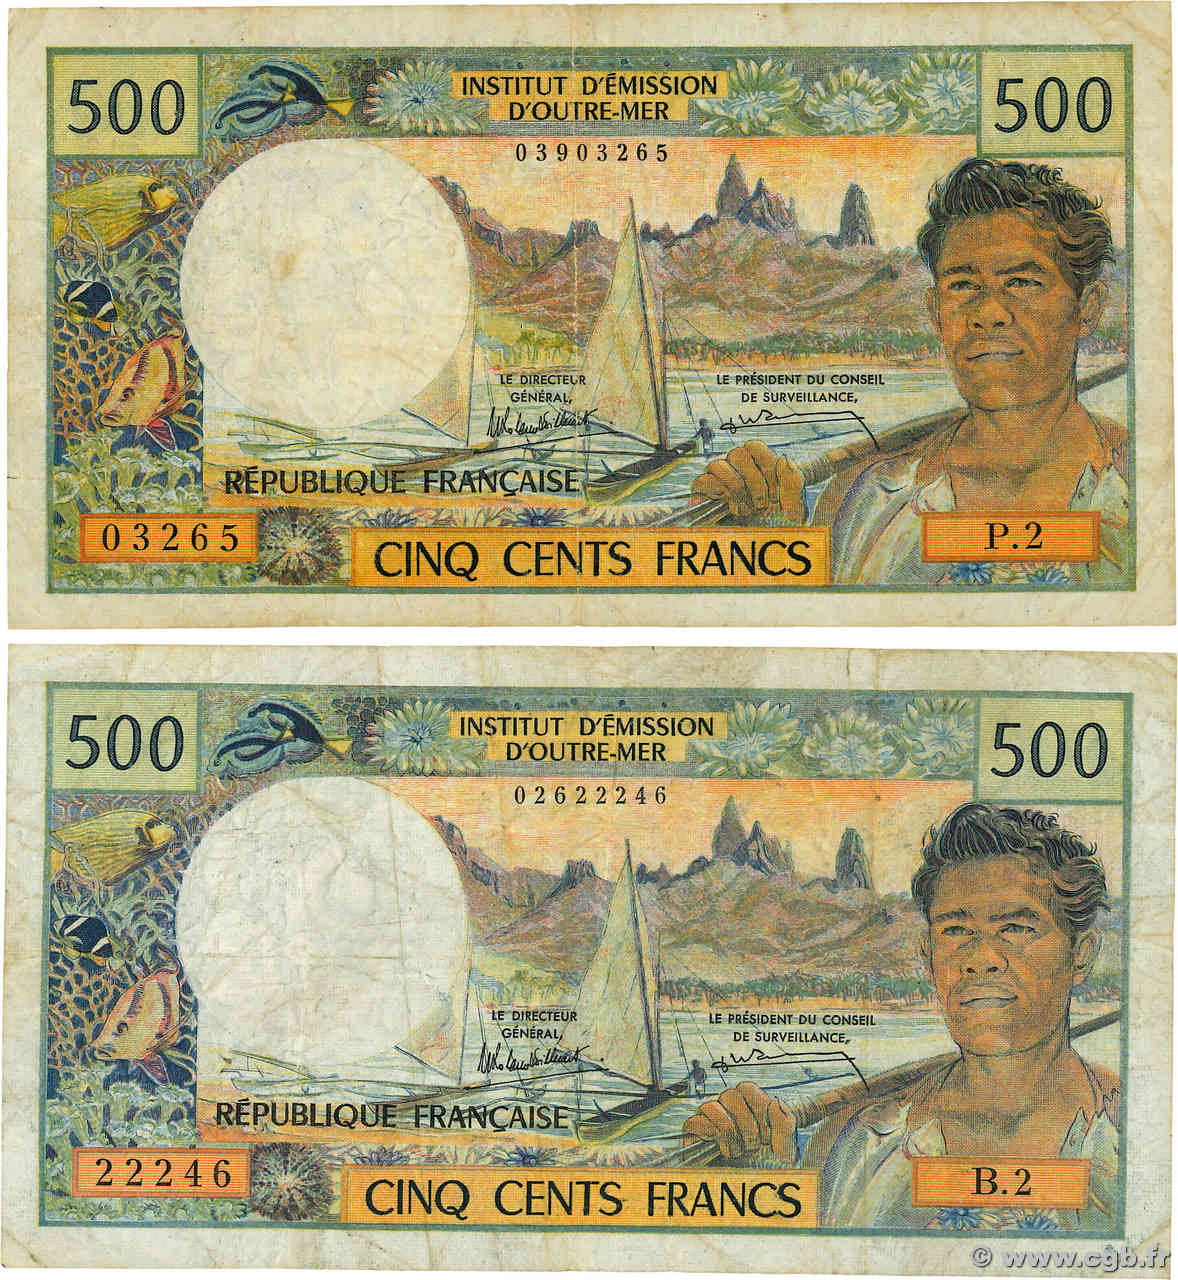 500 Francs Lot NOUVELLE CALÉDONIE  1990 P.60e B+